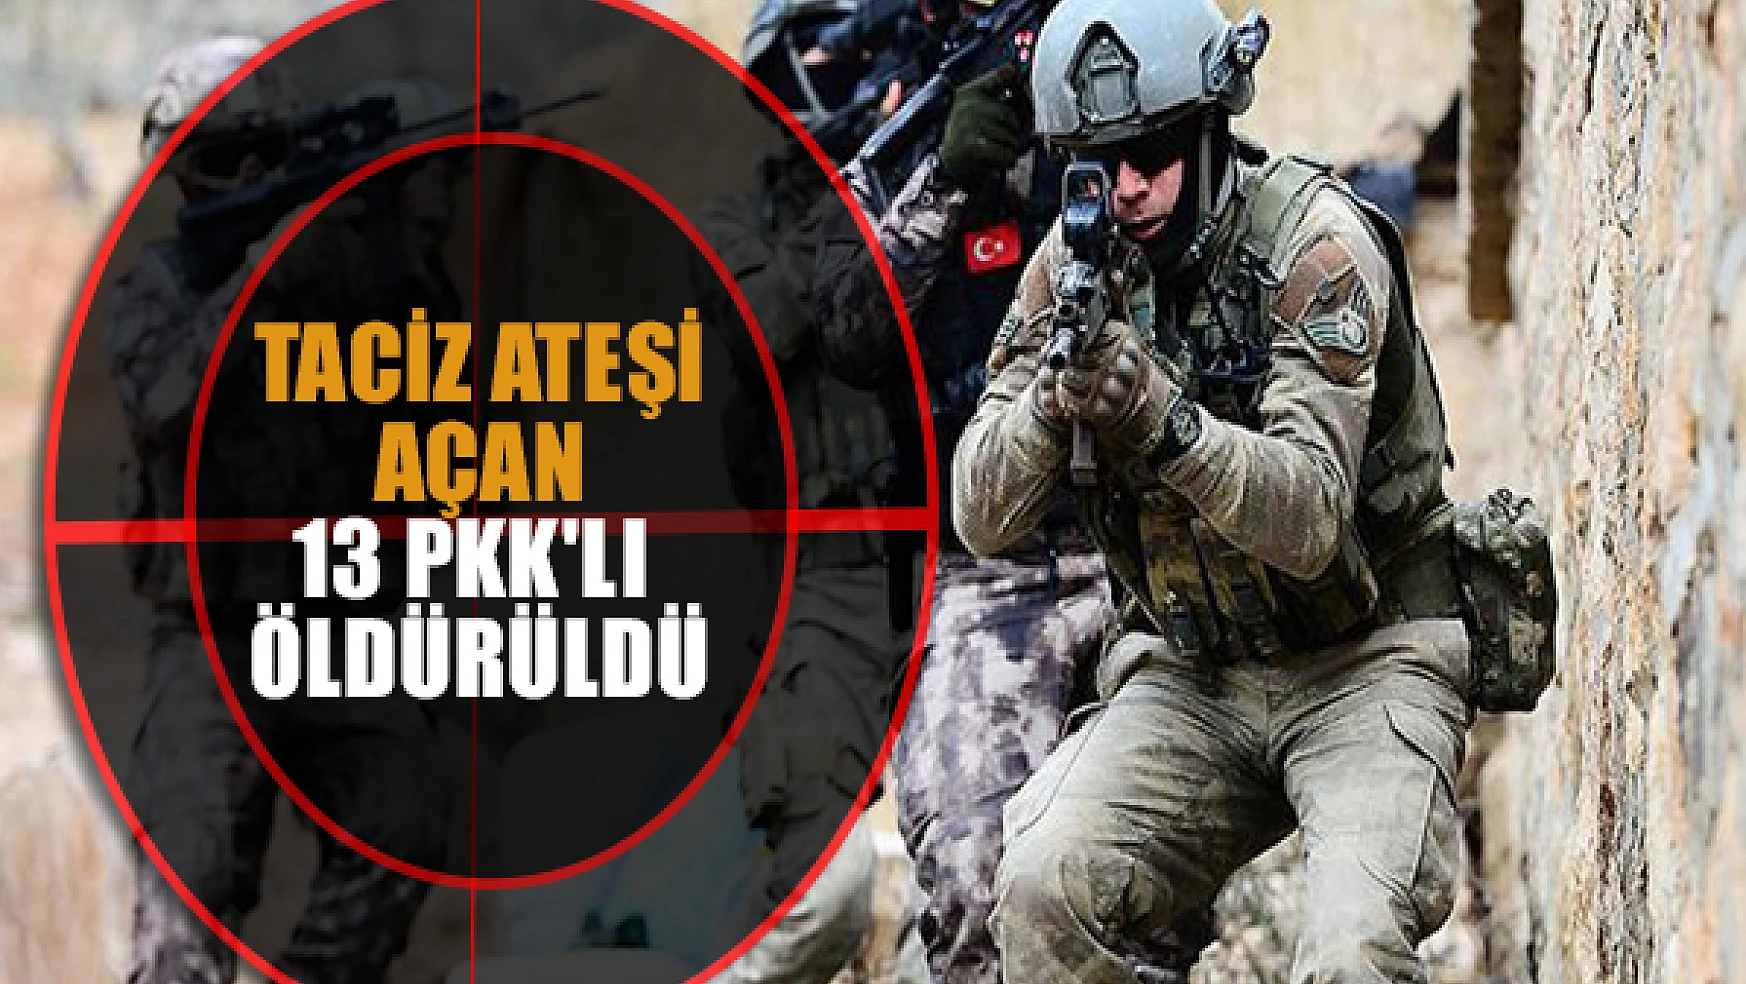 Taciz ateşi açan 13 PKK'lı öldürüldü